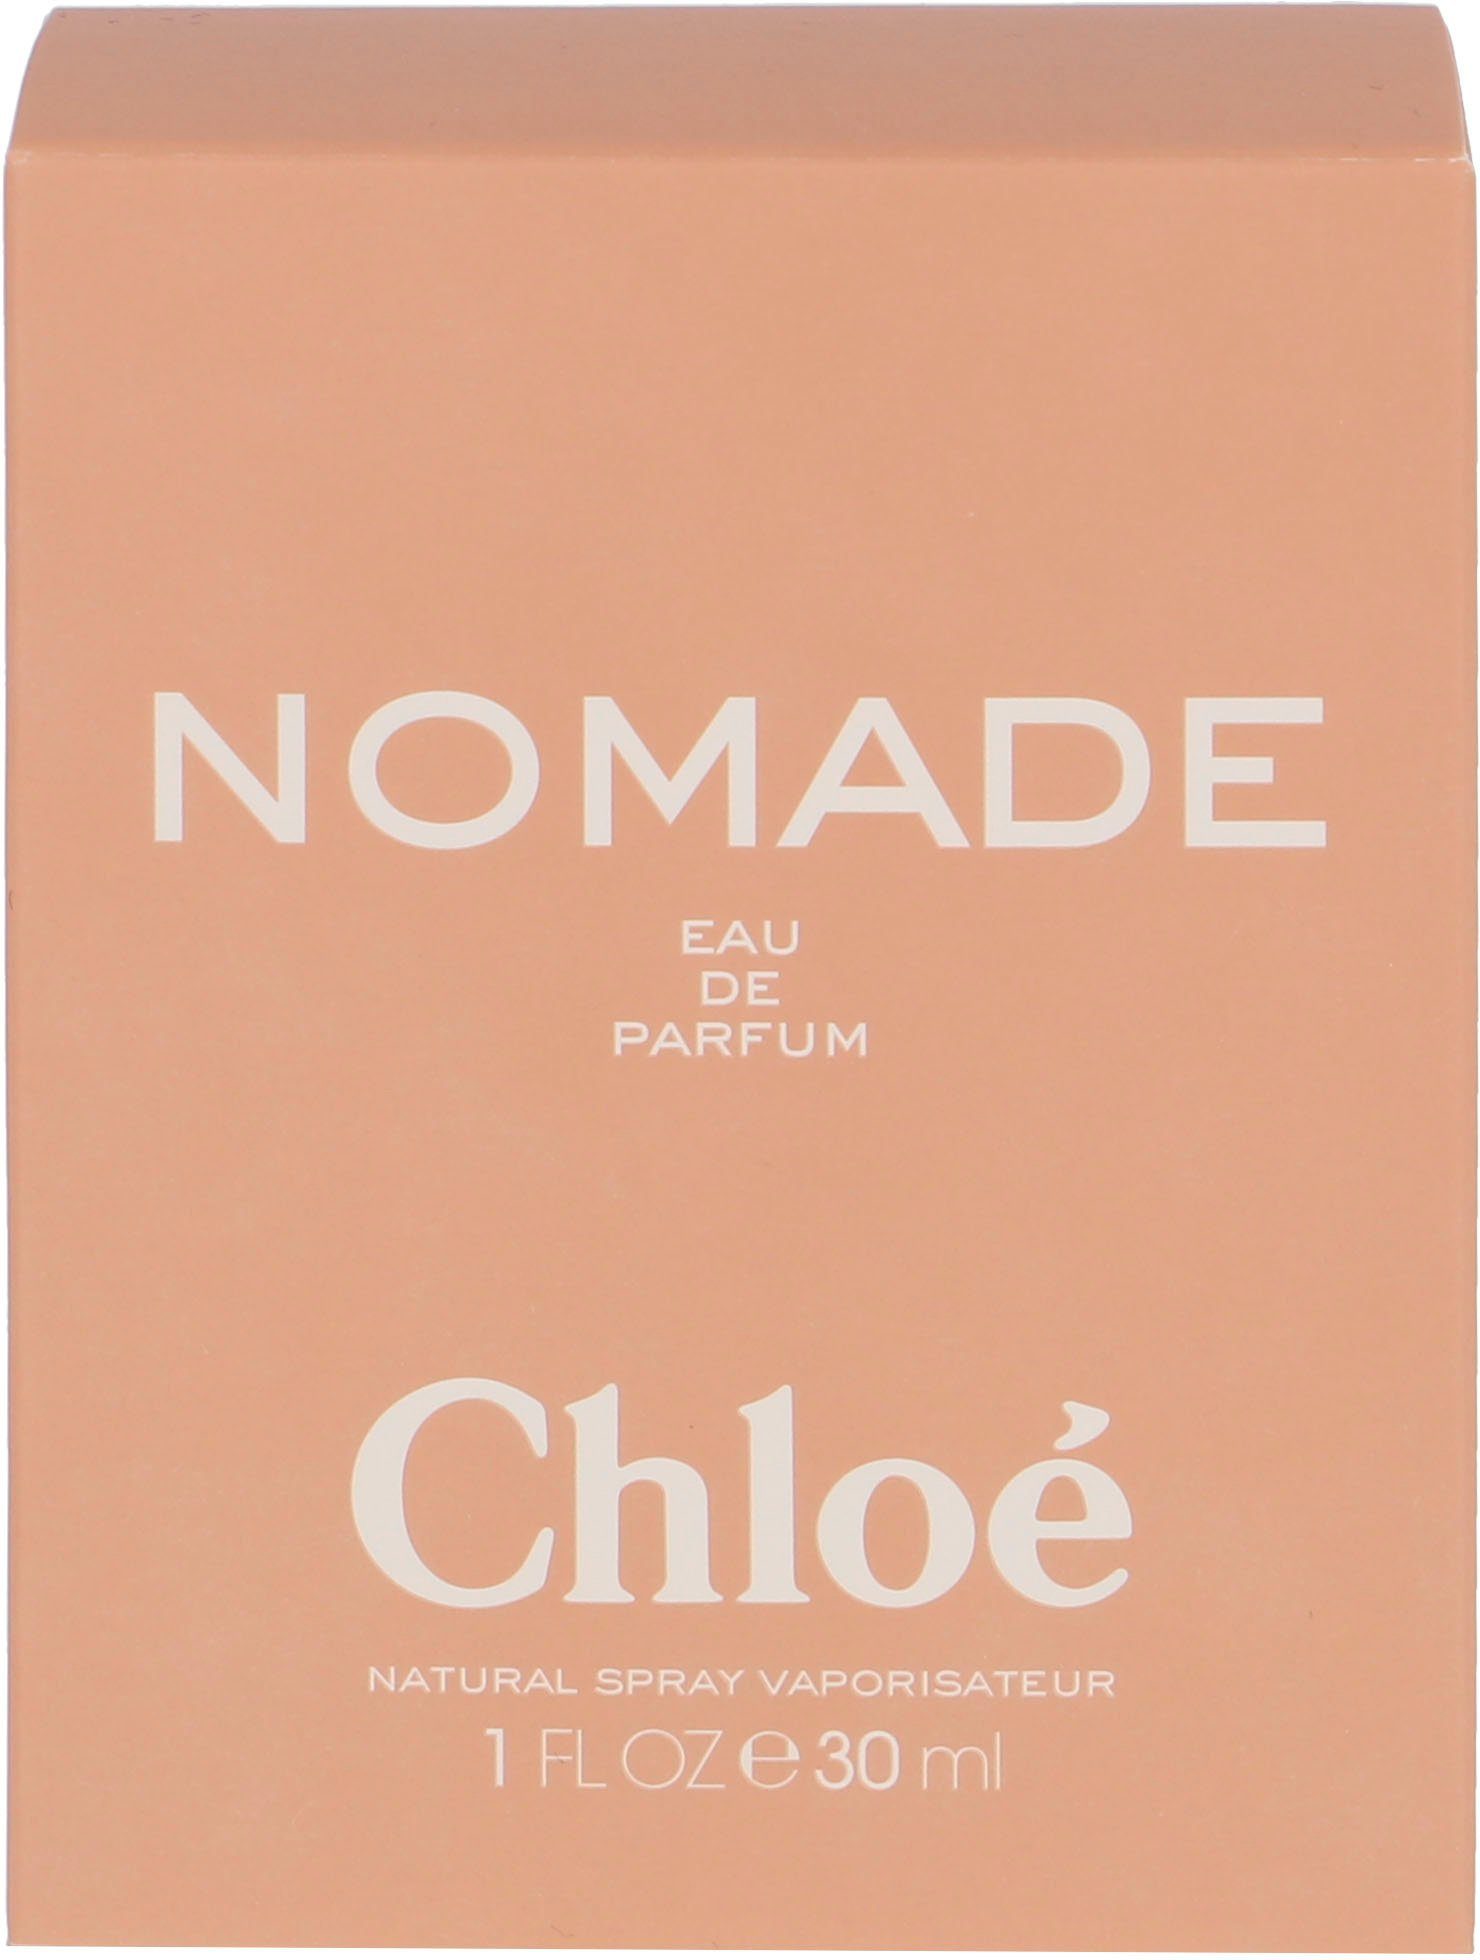 Chloé Eau de Nomade Parfum